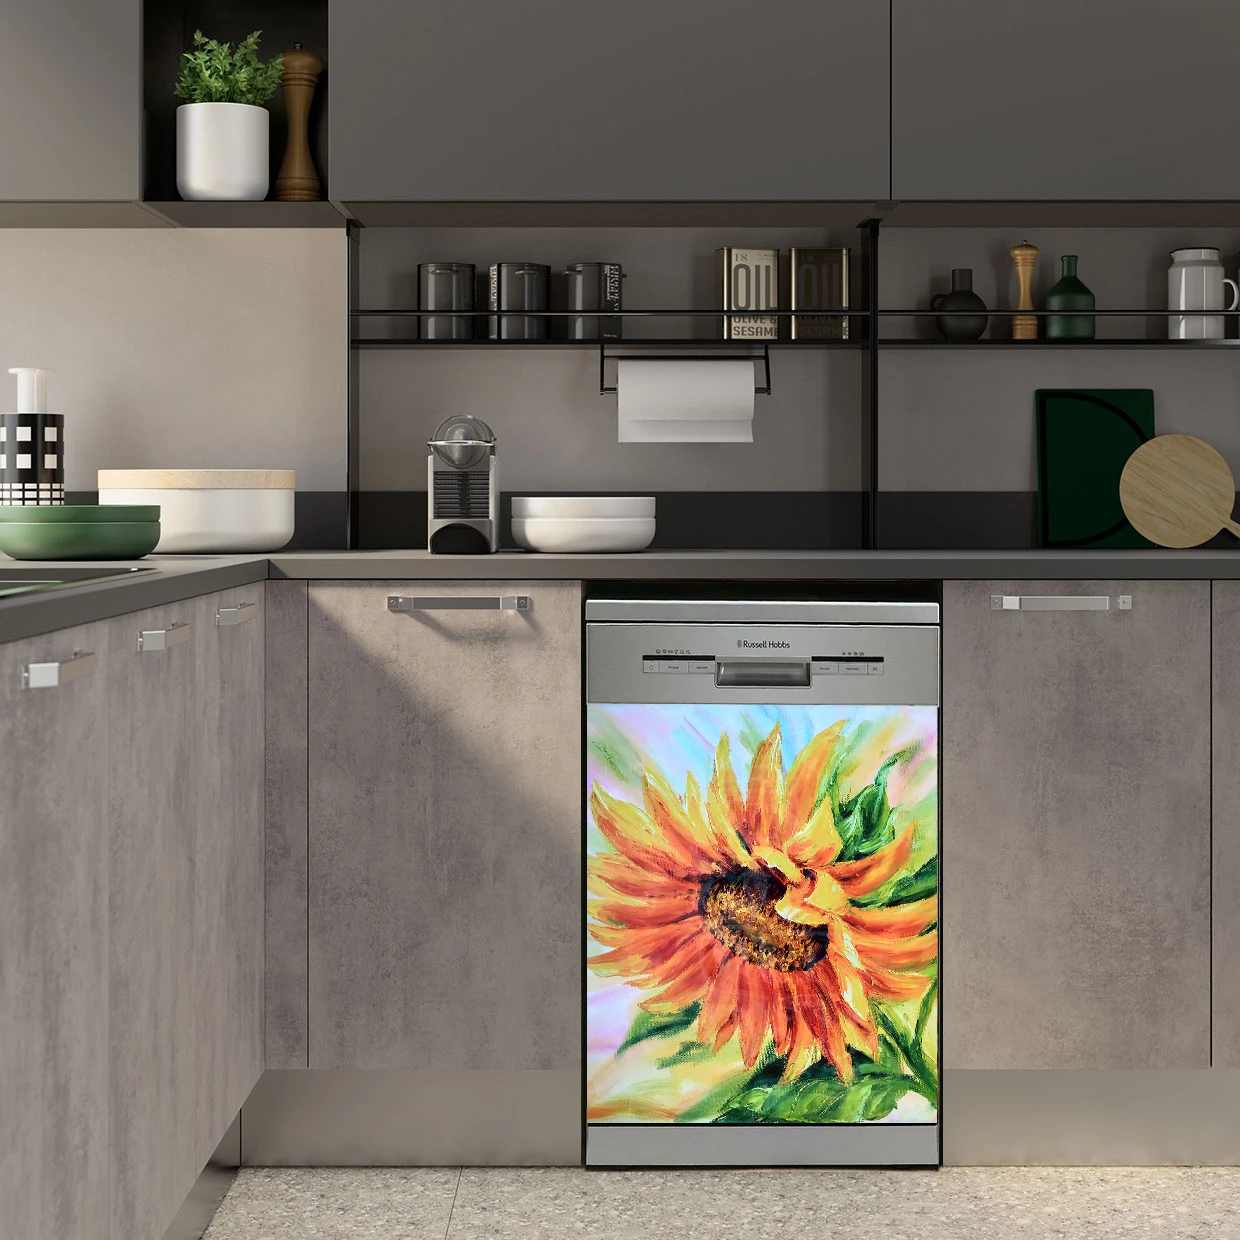 ZYUN Adesivo magnetico per lavastoviglie a forma di girasole adesivo magnetico per frigorifero con piante naturali 58 x 43 cm pannello per frigorifero girasole adesivo per armadietti domestici 